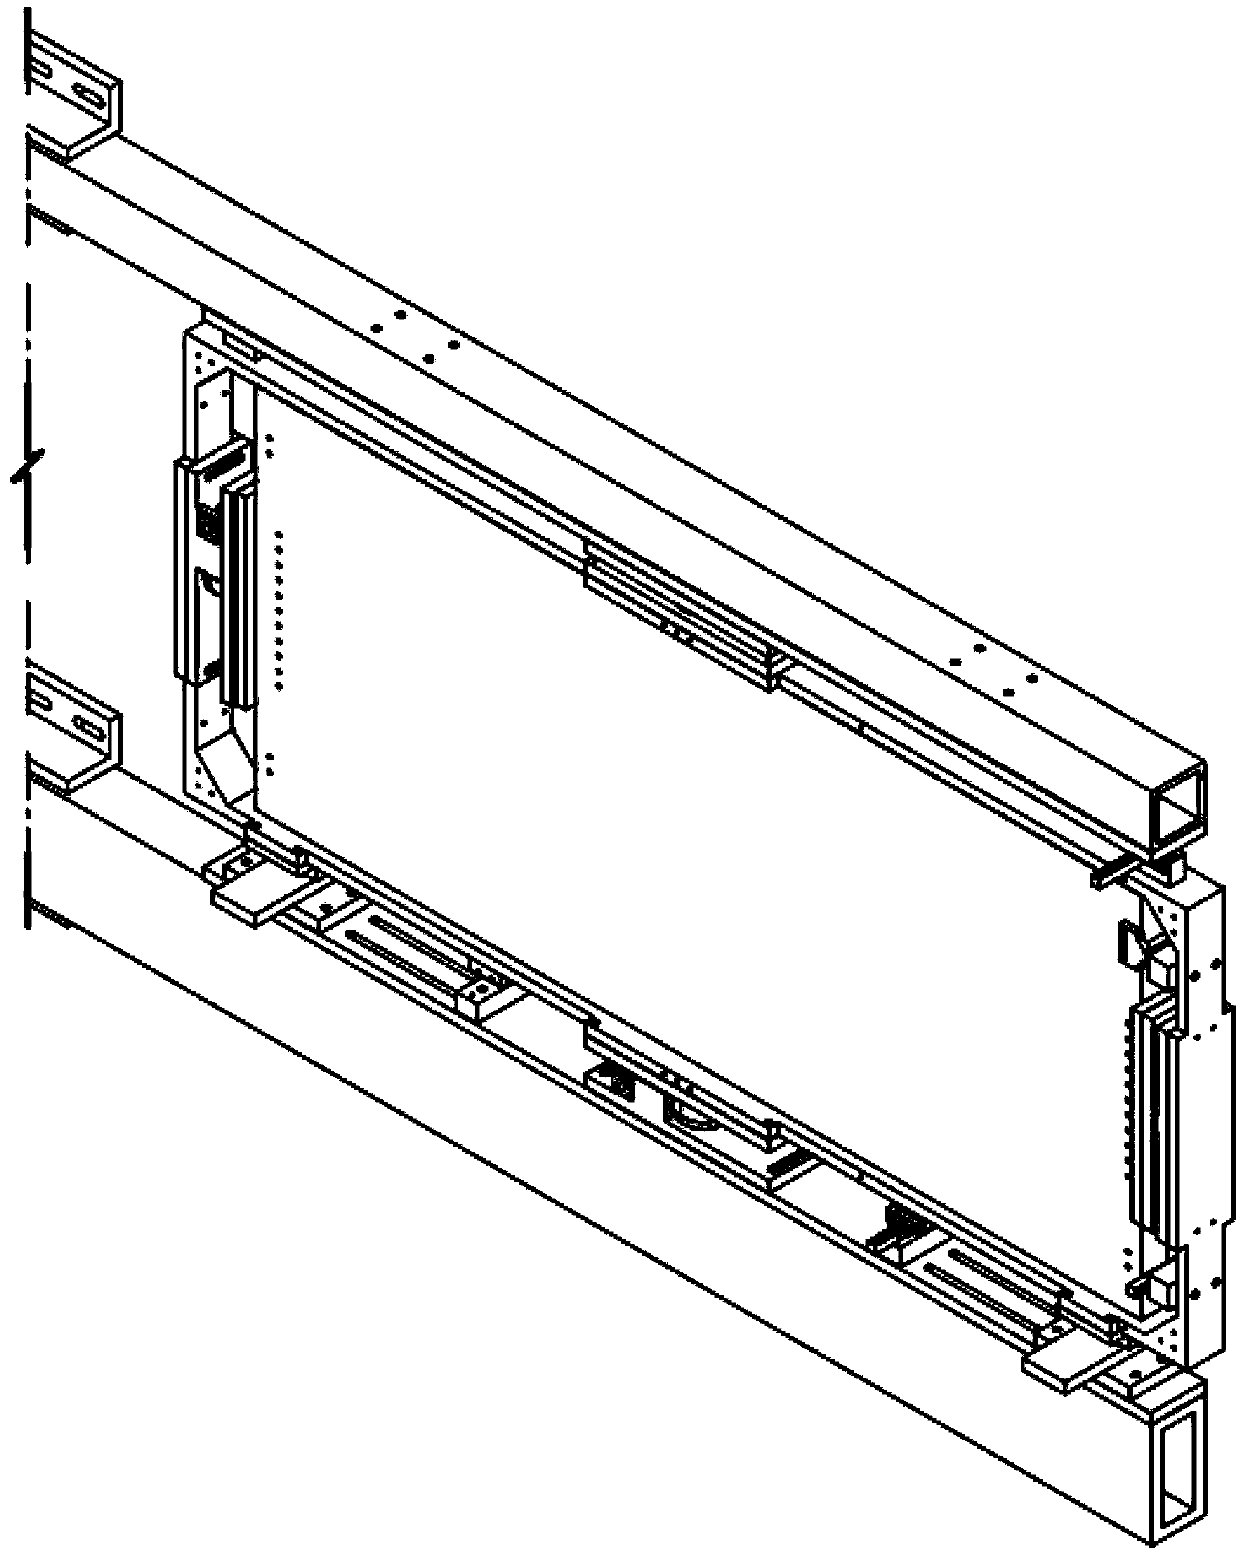 Optical panel bracket with multi-degree-of-freedom adjustment capacity